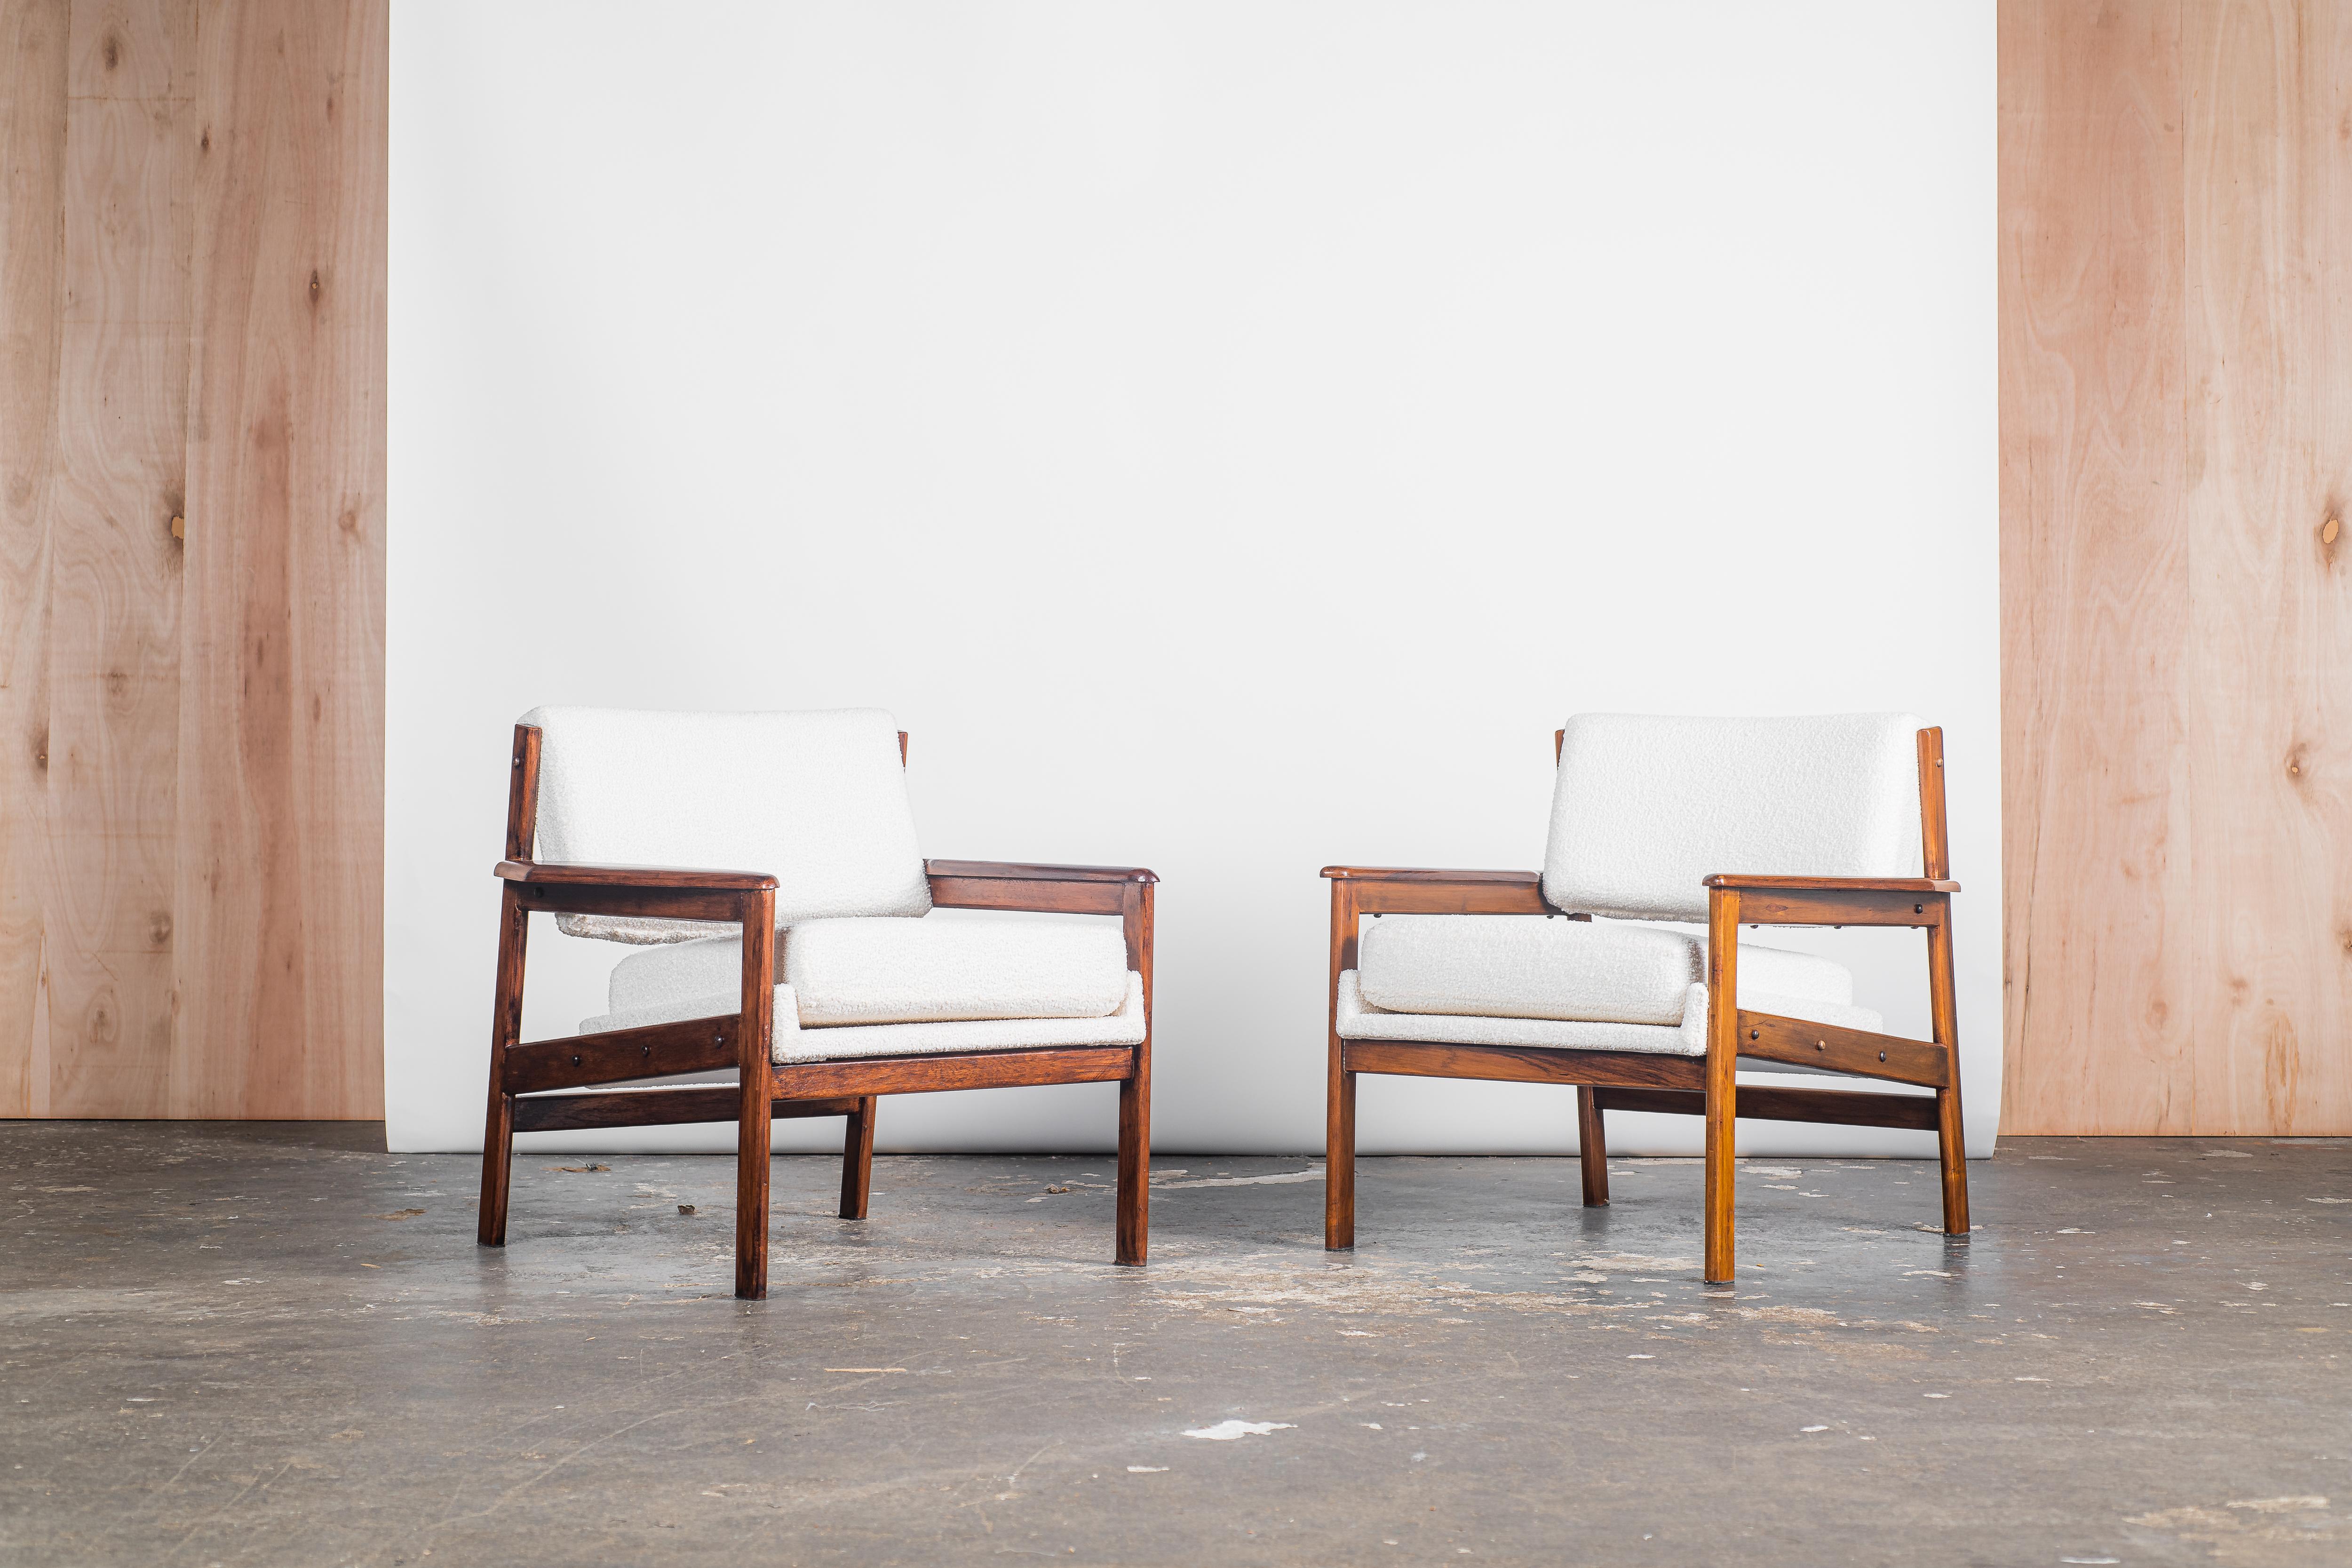 Voici l'illustre fauteuil Drumond, une création distinguée née en 1950 sous les mains expertes d'Oca, un atelier vénérable situé au cœur du Brésil. Réverbérant une force résolue et un équilibre royal, ce chef-d'œuvre est façonné avec art dans